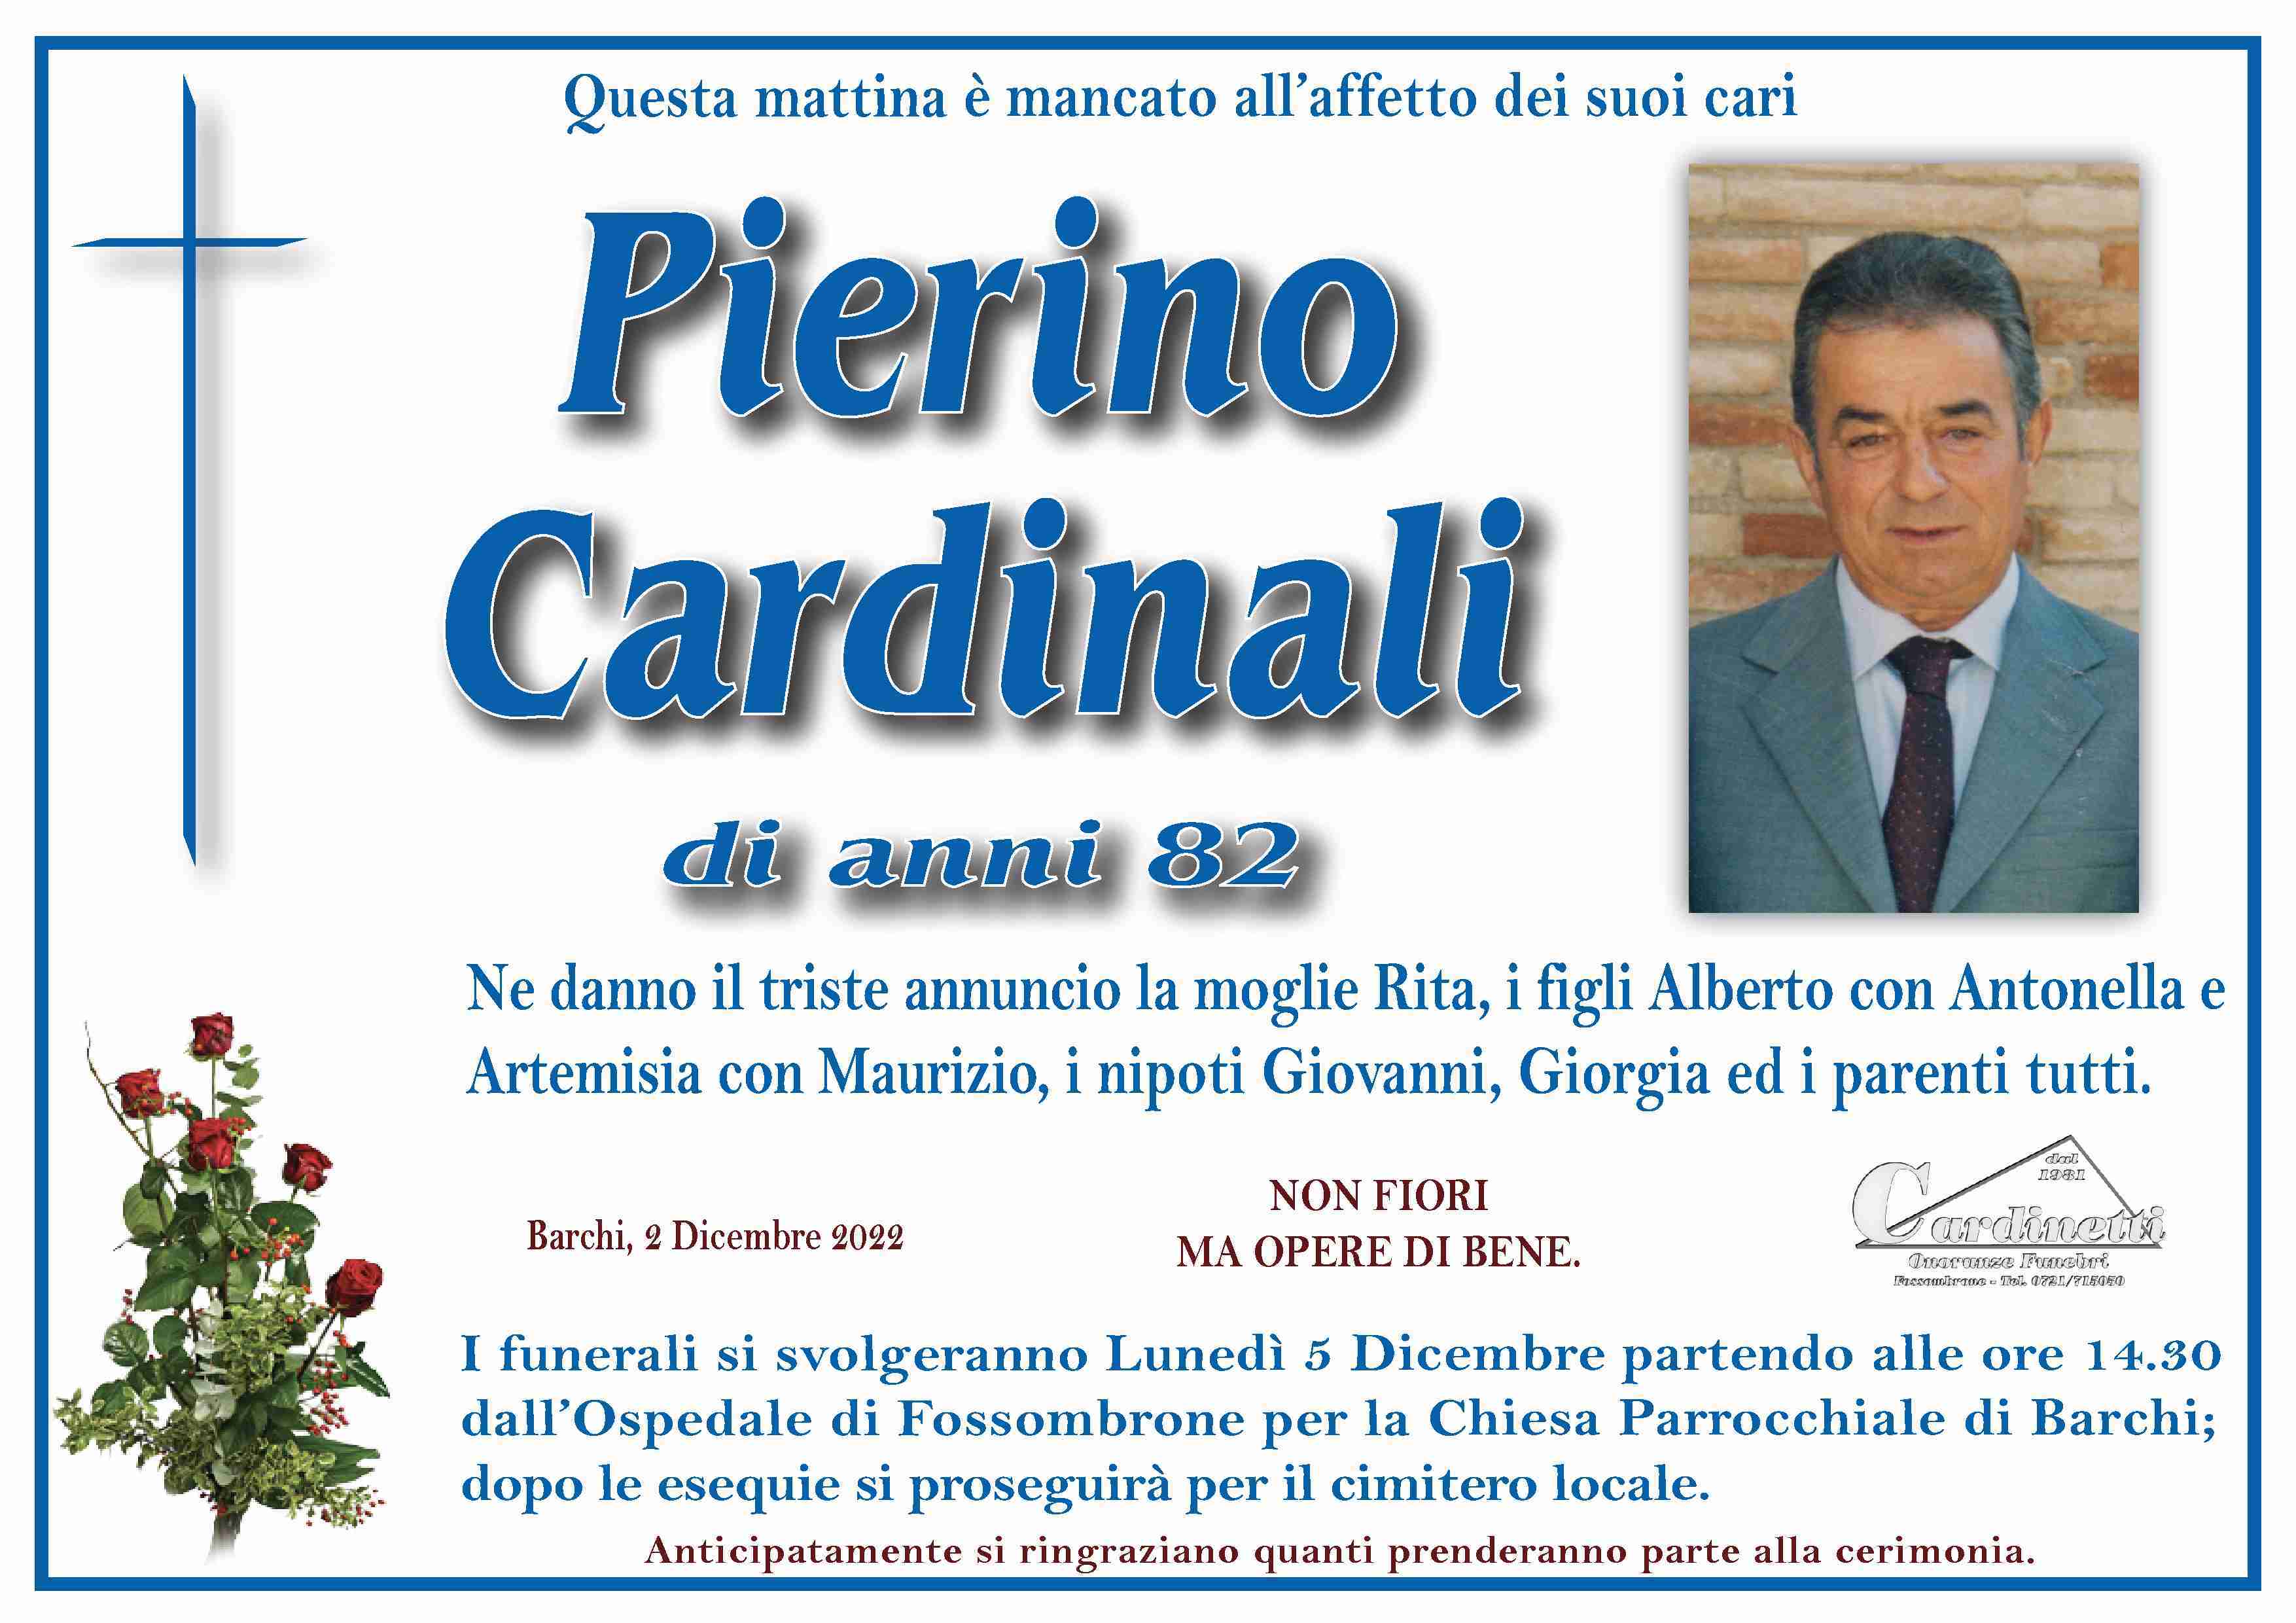 Pierino Cardinali